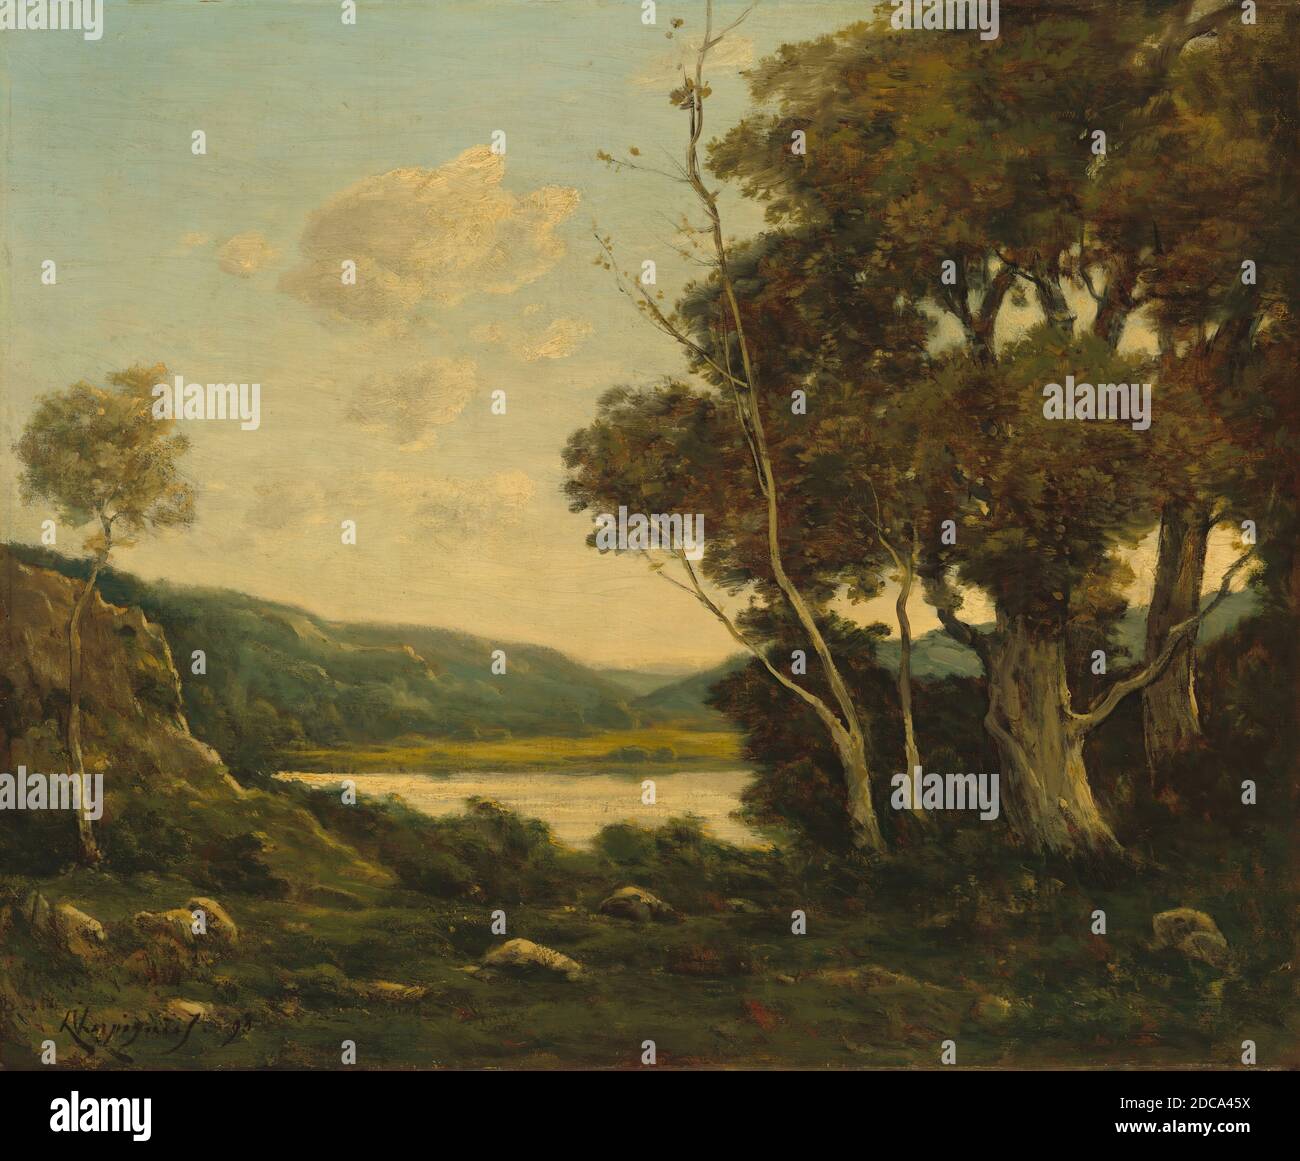 Henri-Joseph Harpignies, (artiste), français, 1819 - 1916, Paysage, 1898, huile sur toile, total: 50.2 x 61.6 cm (19 3/4 x 24 1/4 po.), encadré: 80.9 x 92.4 x 9.5 cm (31 7/8 x 36 3/8 x 3 3/4 po Banque D'Images